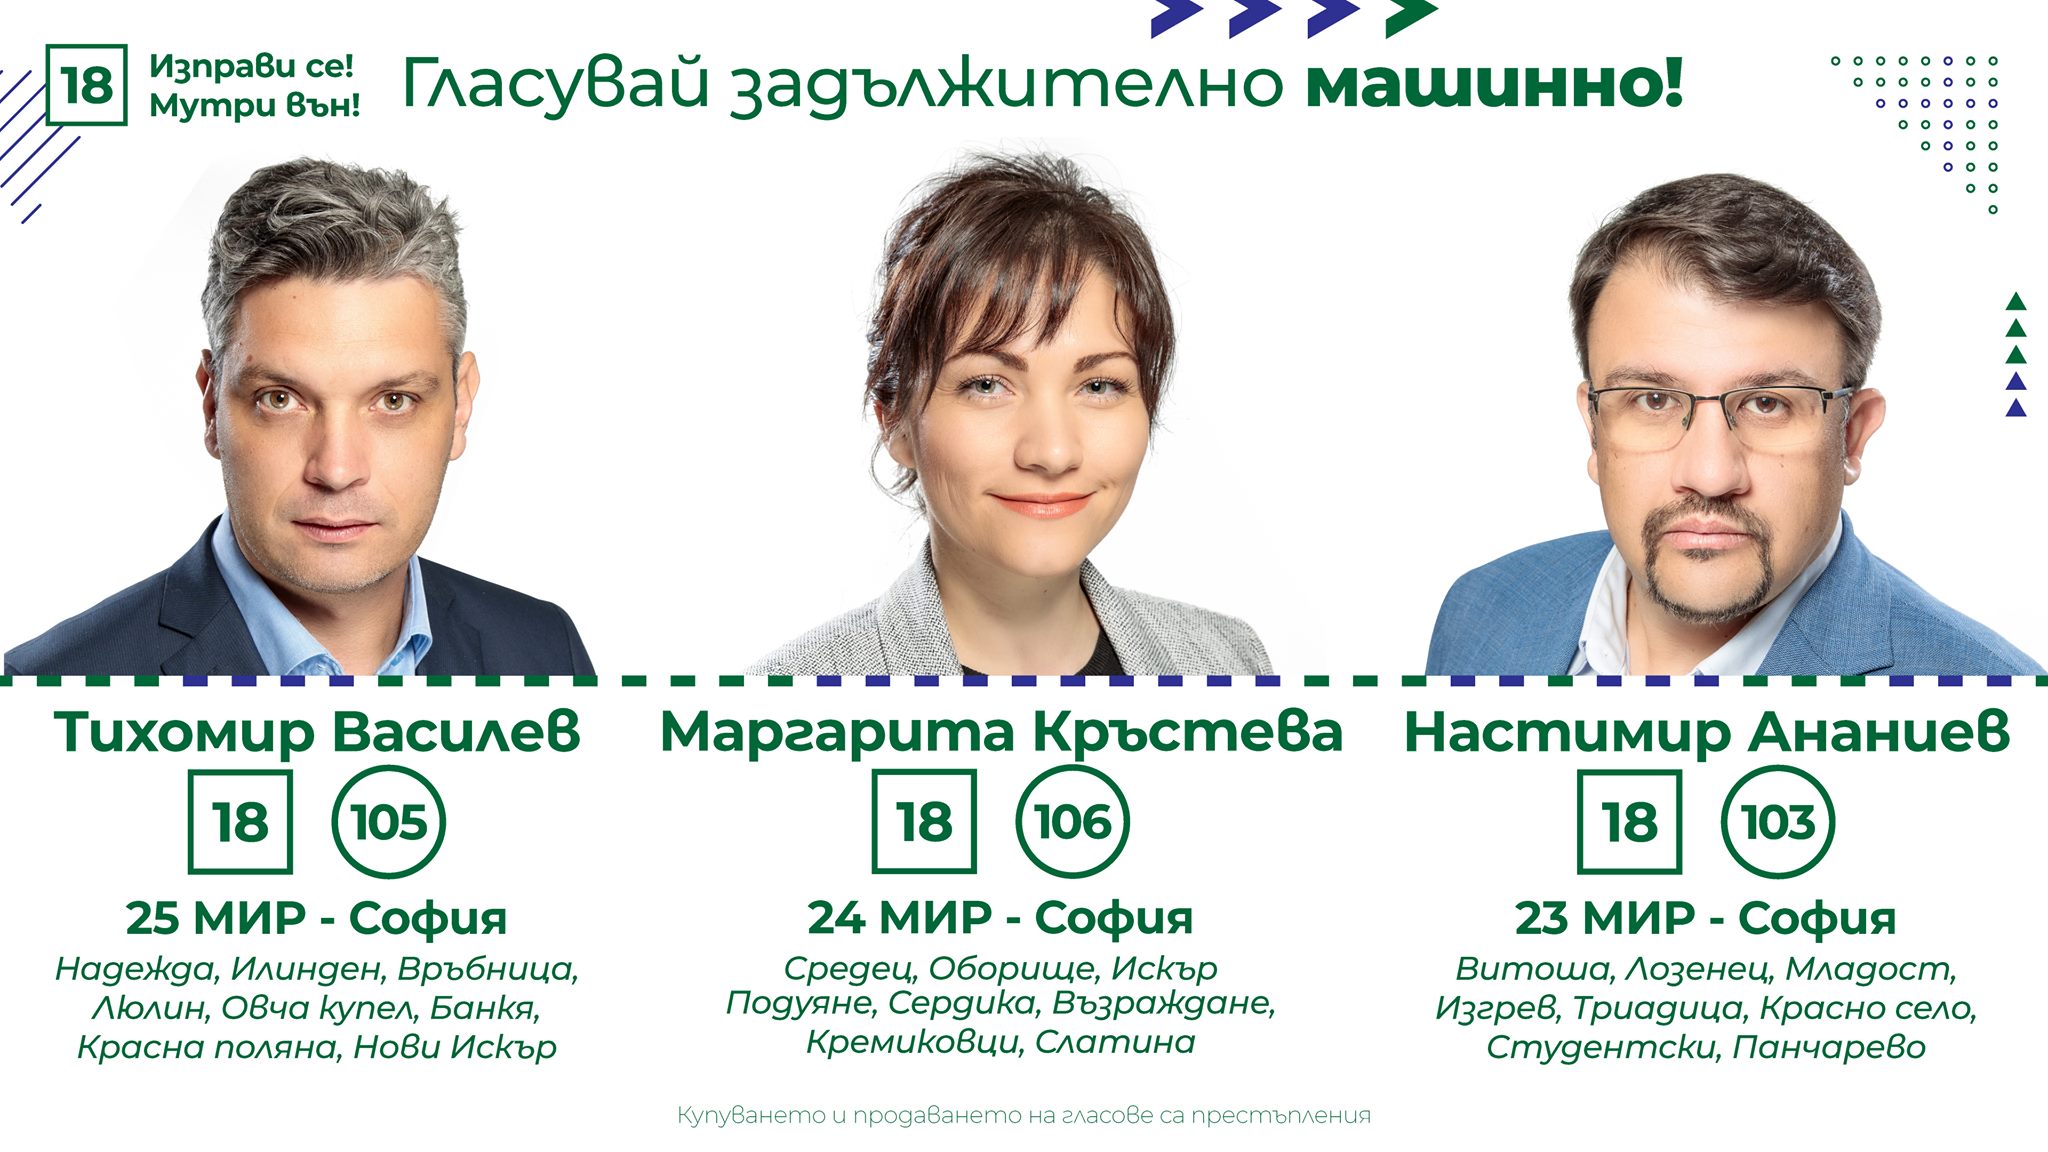 Очаквайте скоро и видеото от кампанията #ТиПренареждаш и #ПредайНататък на #ЛицаОтПротеста със съдействието на Тихомир Валериев Василев и Маргарита Кръстева.